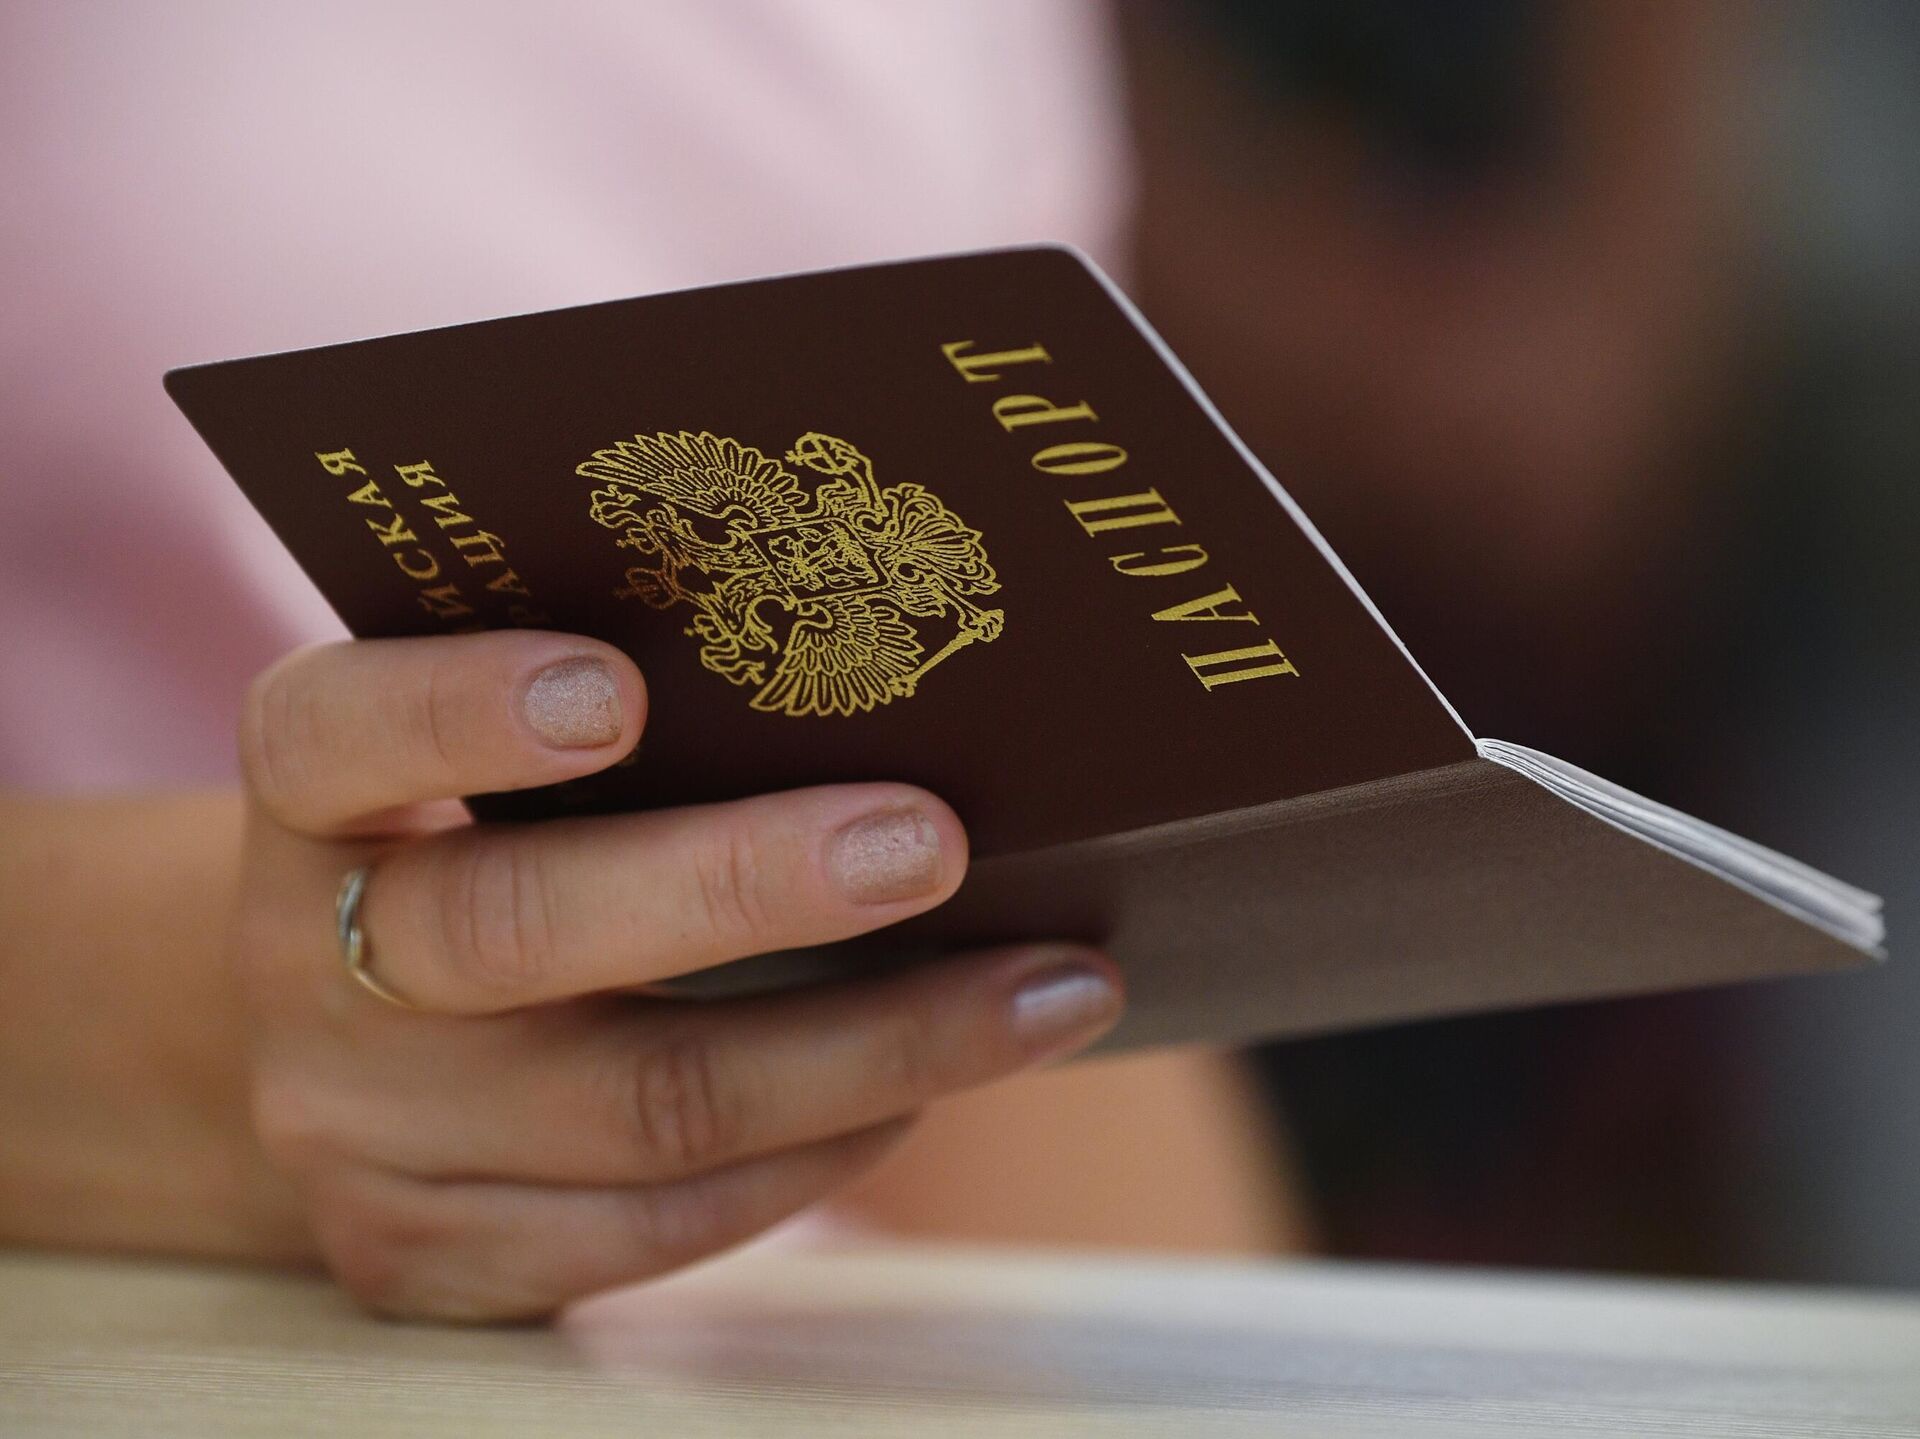 Пора менять паспорт? Какие документы следует подготовить